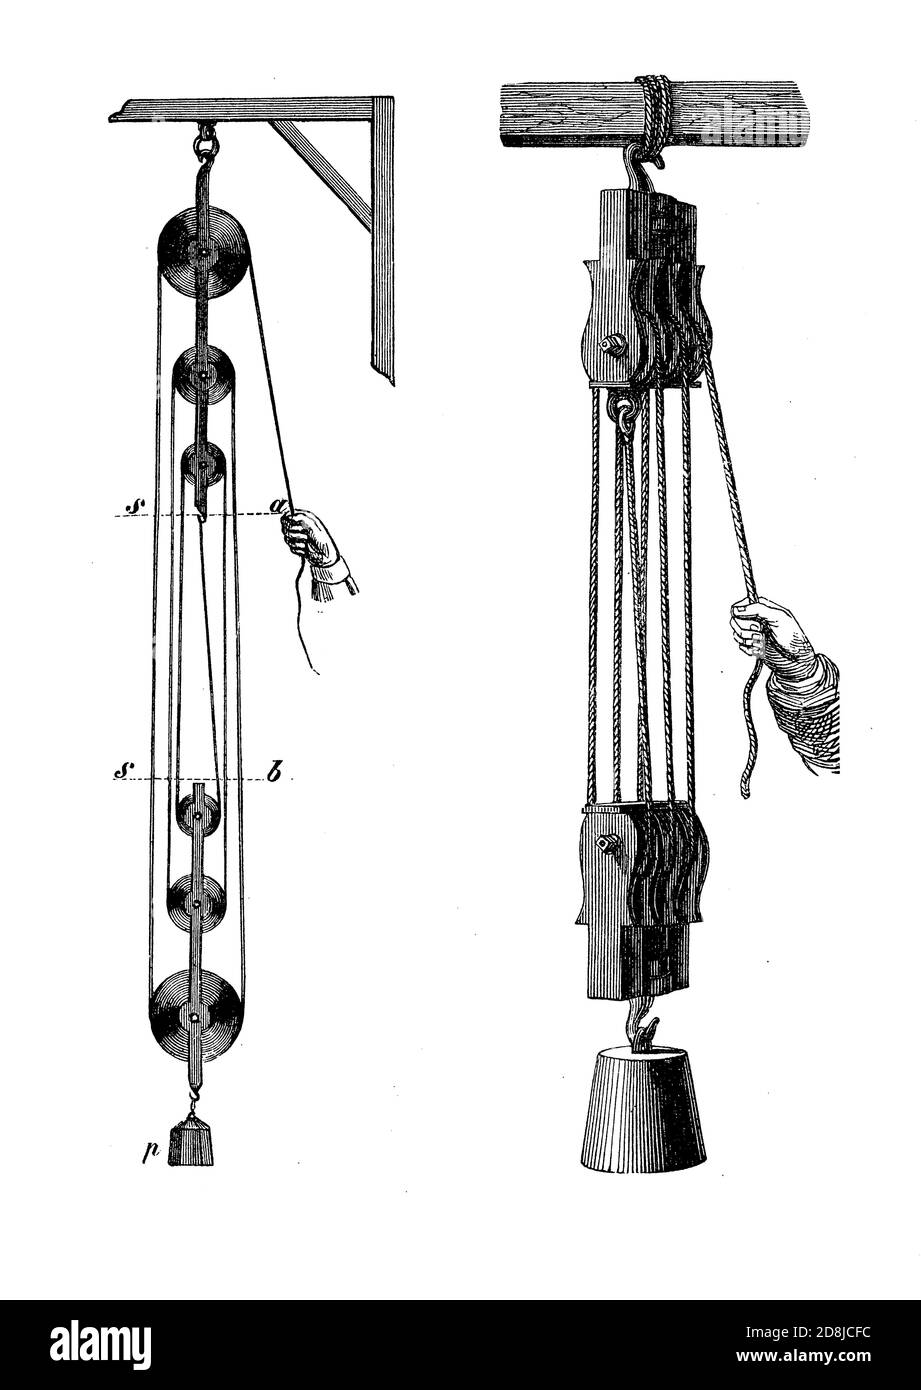 Ilustración de época: Bloque y aparejo, sistema de más poleas con una  cuerda o cable entre ellos, generalmente utilizado para levantar cargas  pesadas amplificando la fuerza aplicada a la cuerda Fotografía de